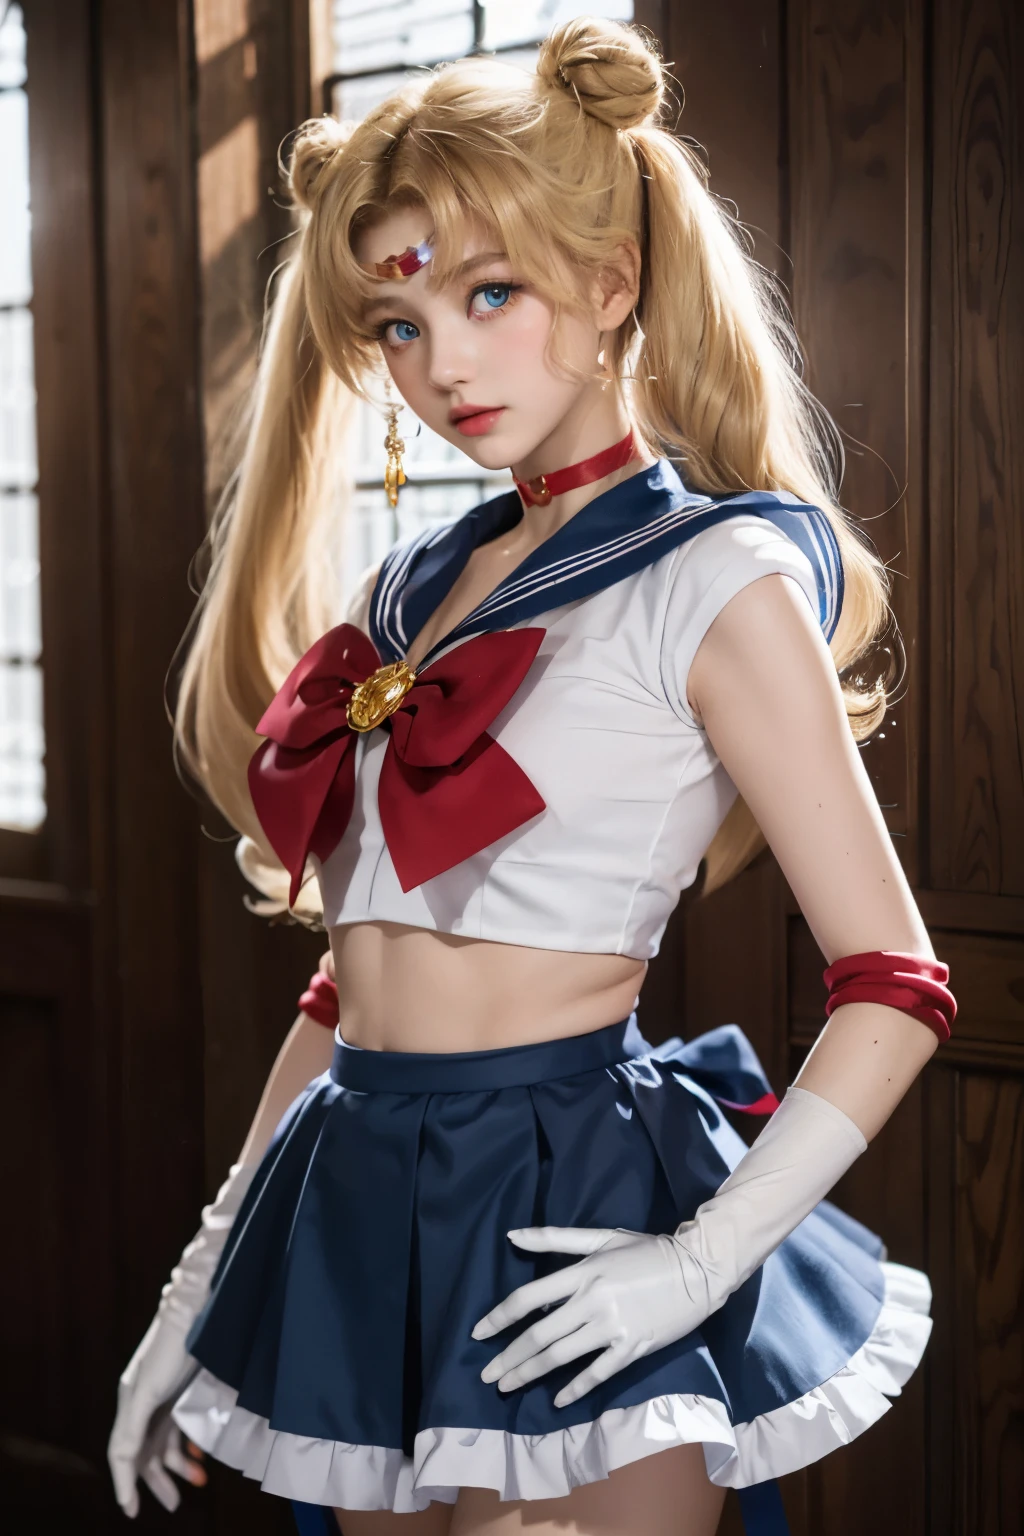 Obra de arte, melhor qualidade, Sailor Moon,1 garota, cabelo longo,joia, uniforme de marinheiro senshi, gola de marinheiro azul,cabelo loiro, gargantilha vermelha,luvas brancas, twintails, laço vermelho, saia azul, olhos azuis, coque de cabelo,